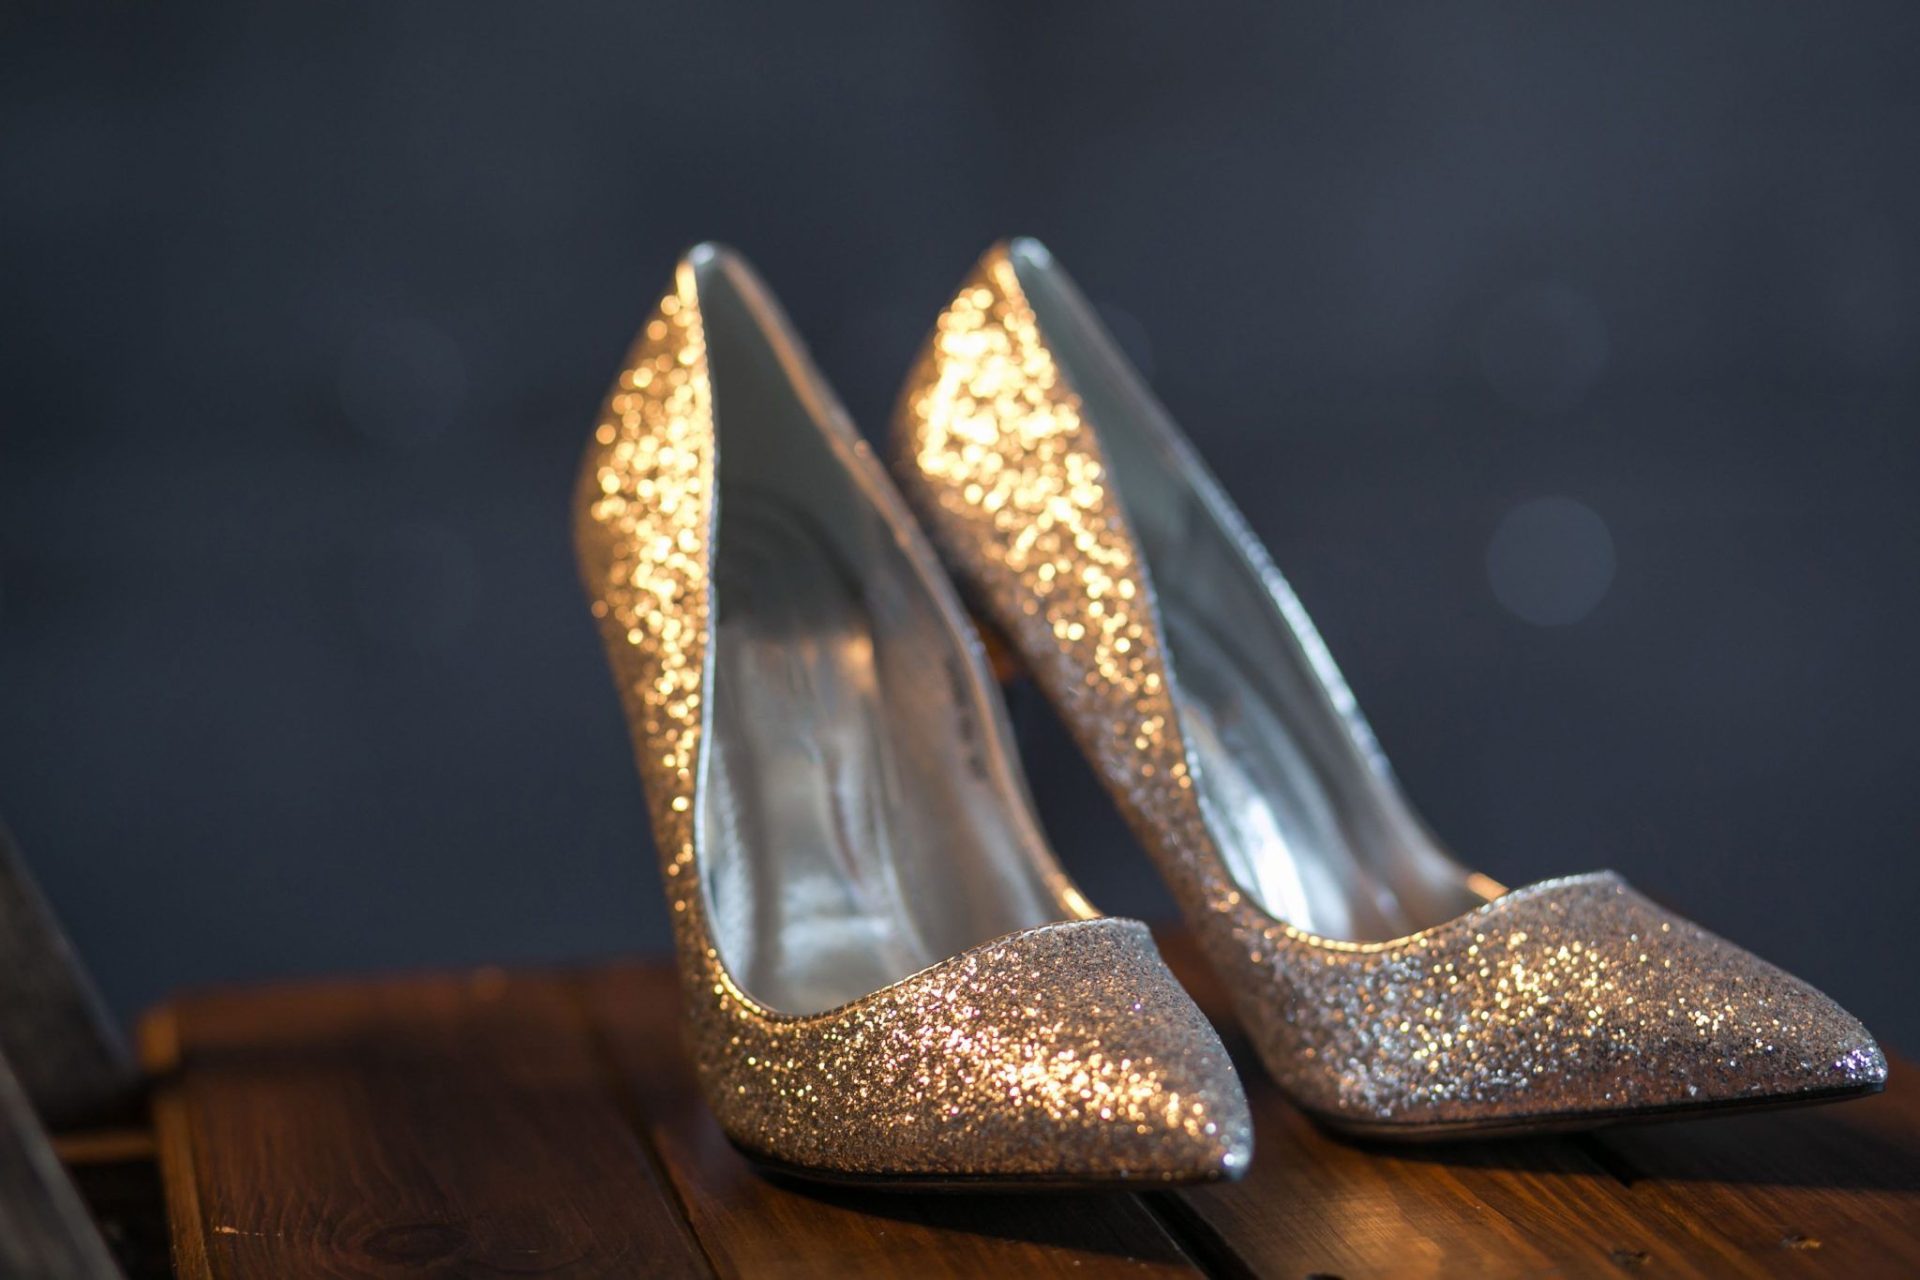 Women heeled shoes